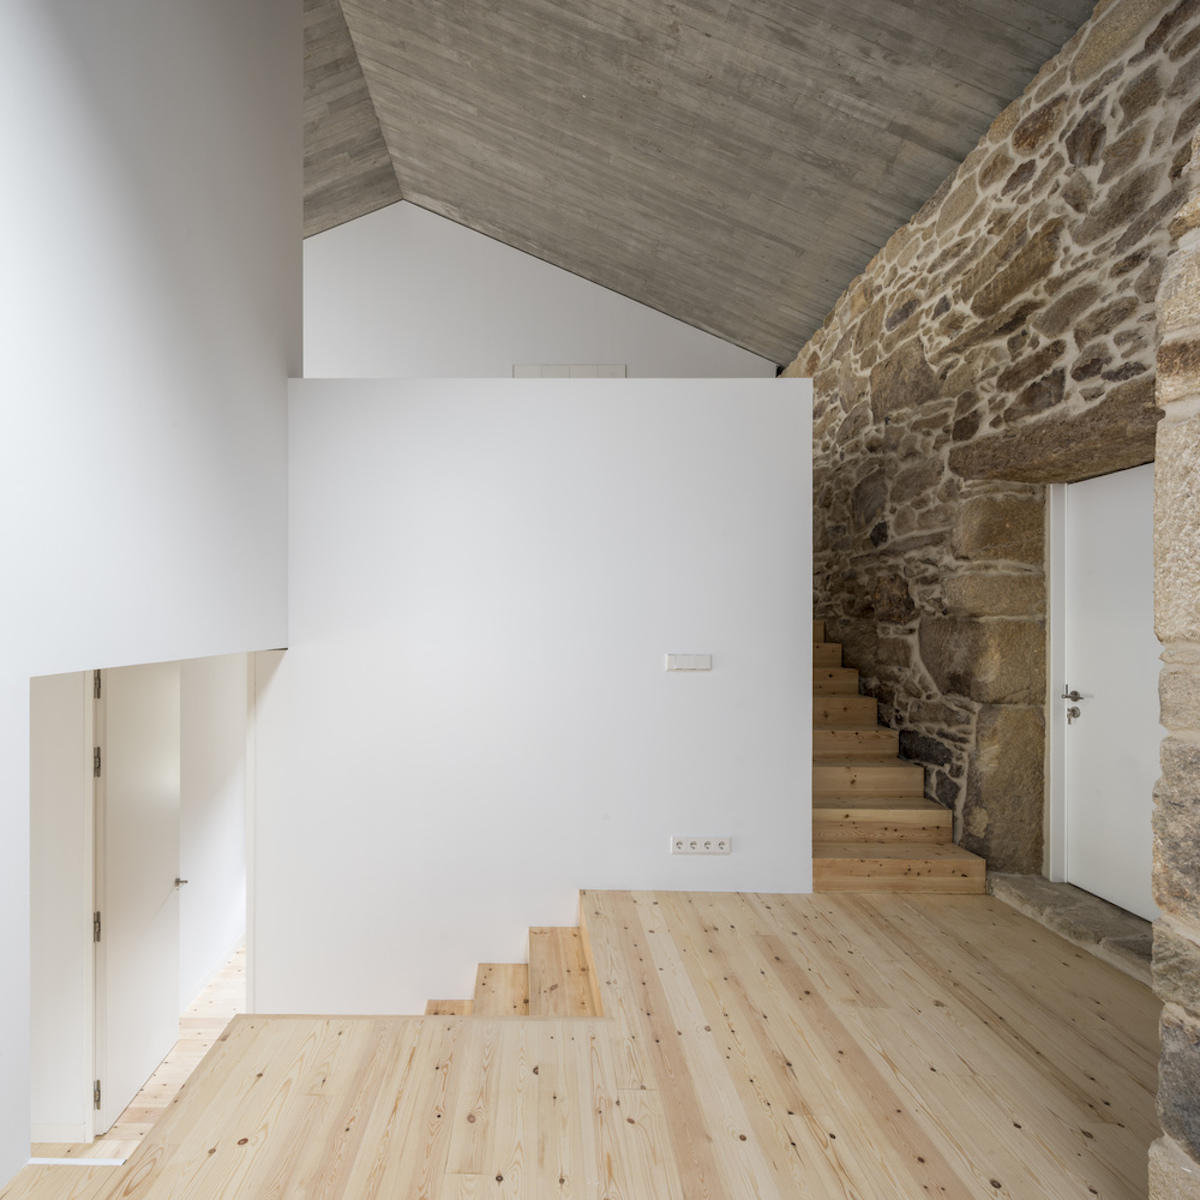 Zjednocujúcim prvkom interiéru je drevo z galícijskej borovice použité na podlahách.